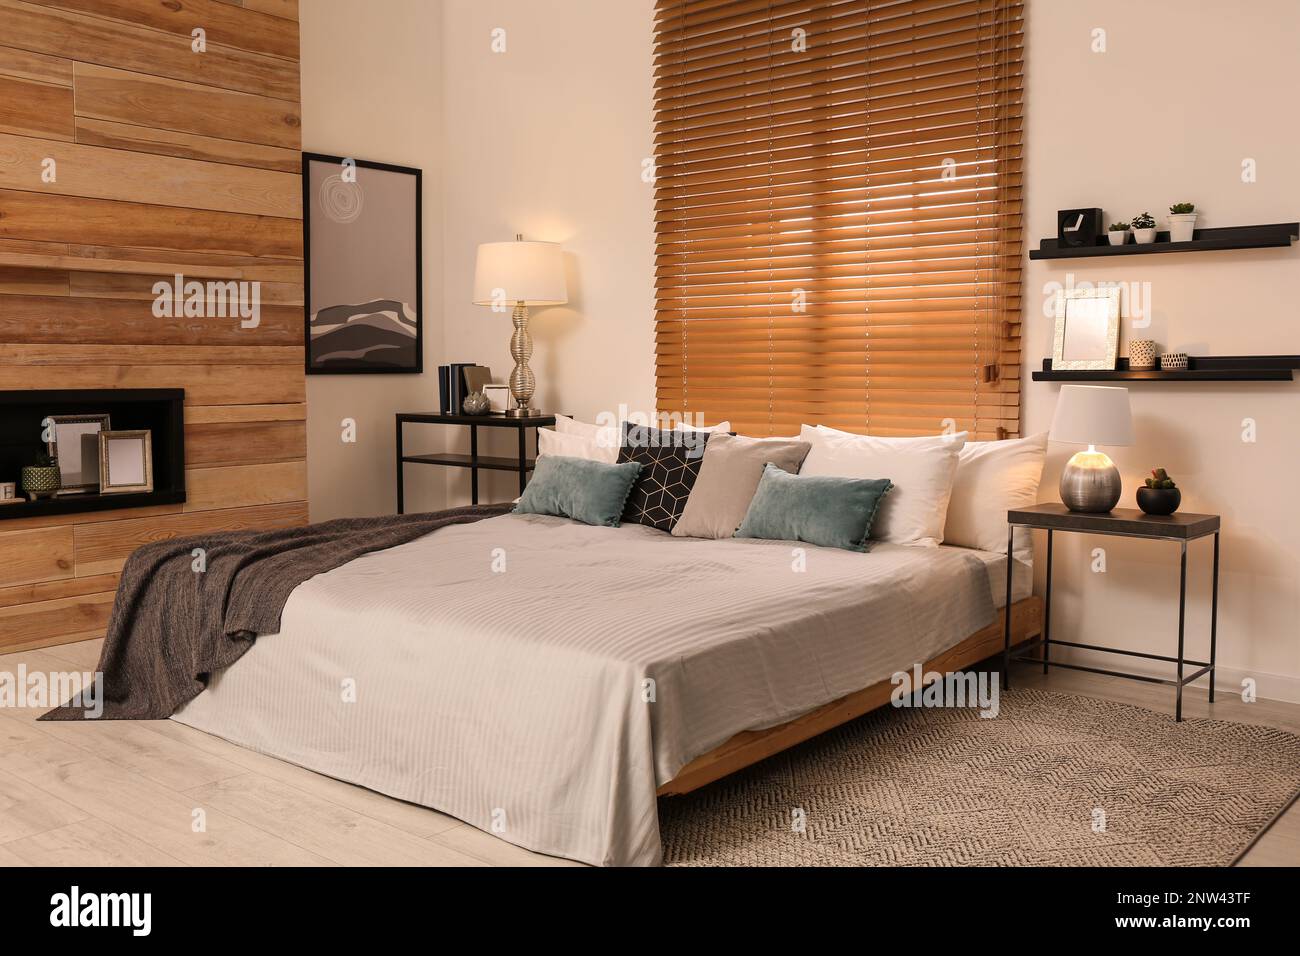 Chambre élégante avec grand lit confortable Banque D'Images